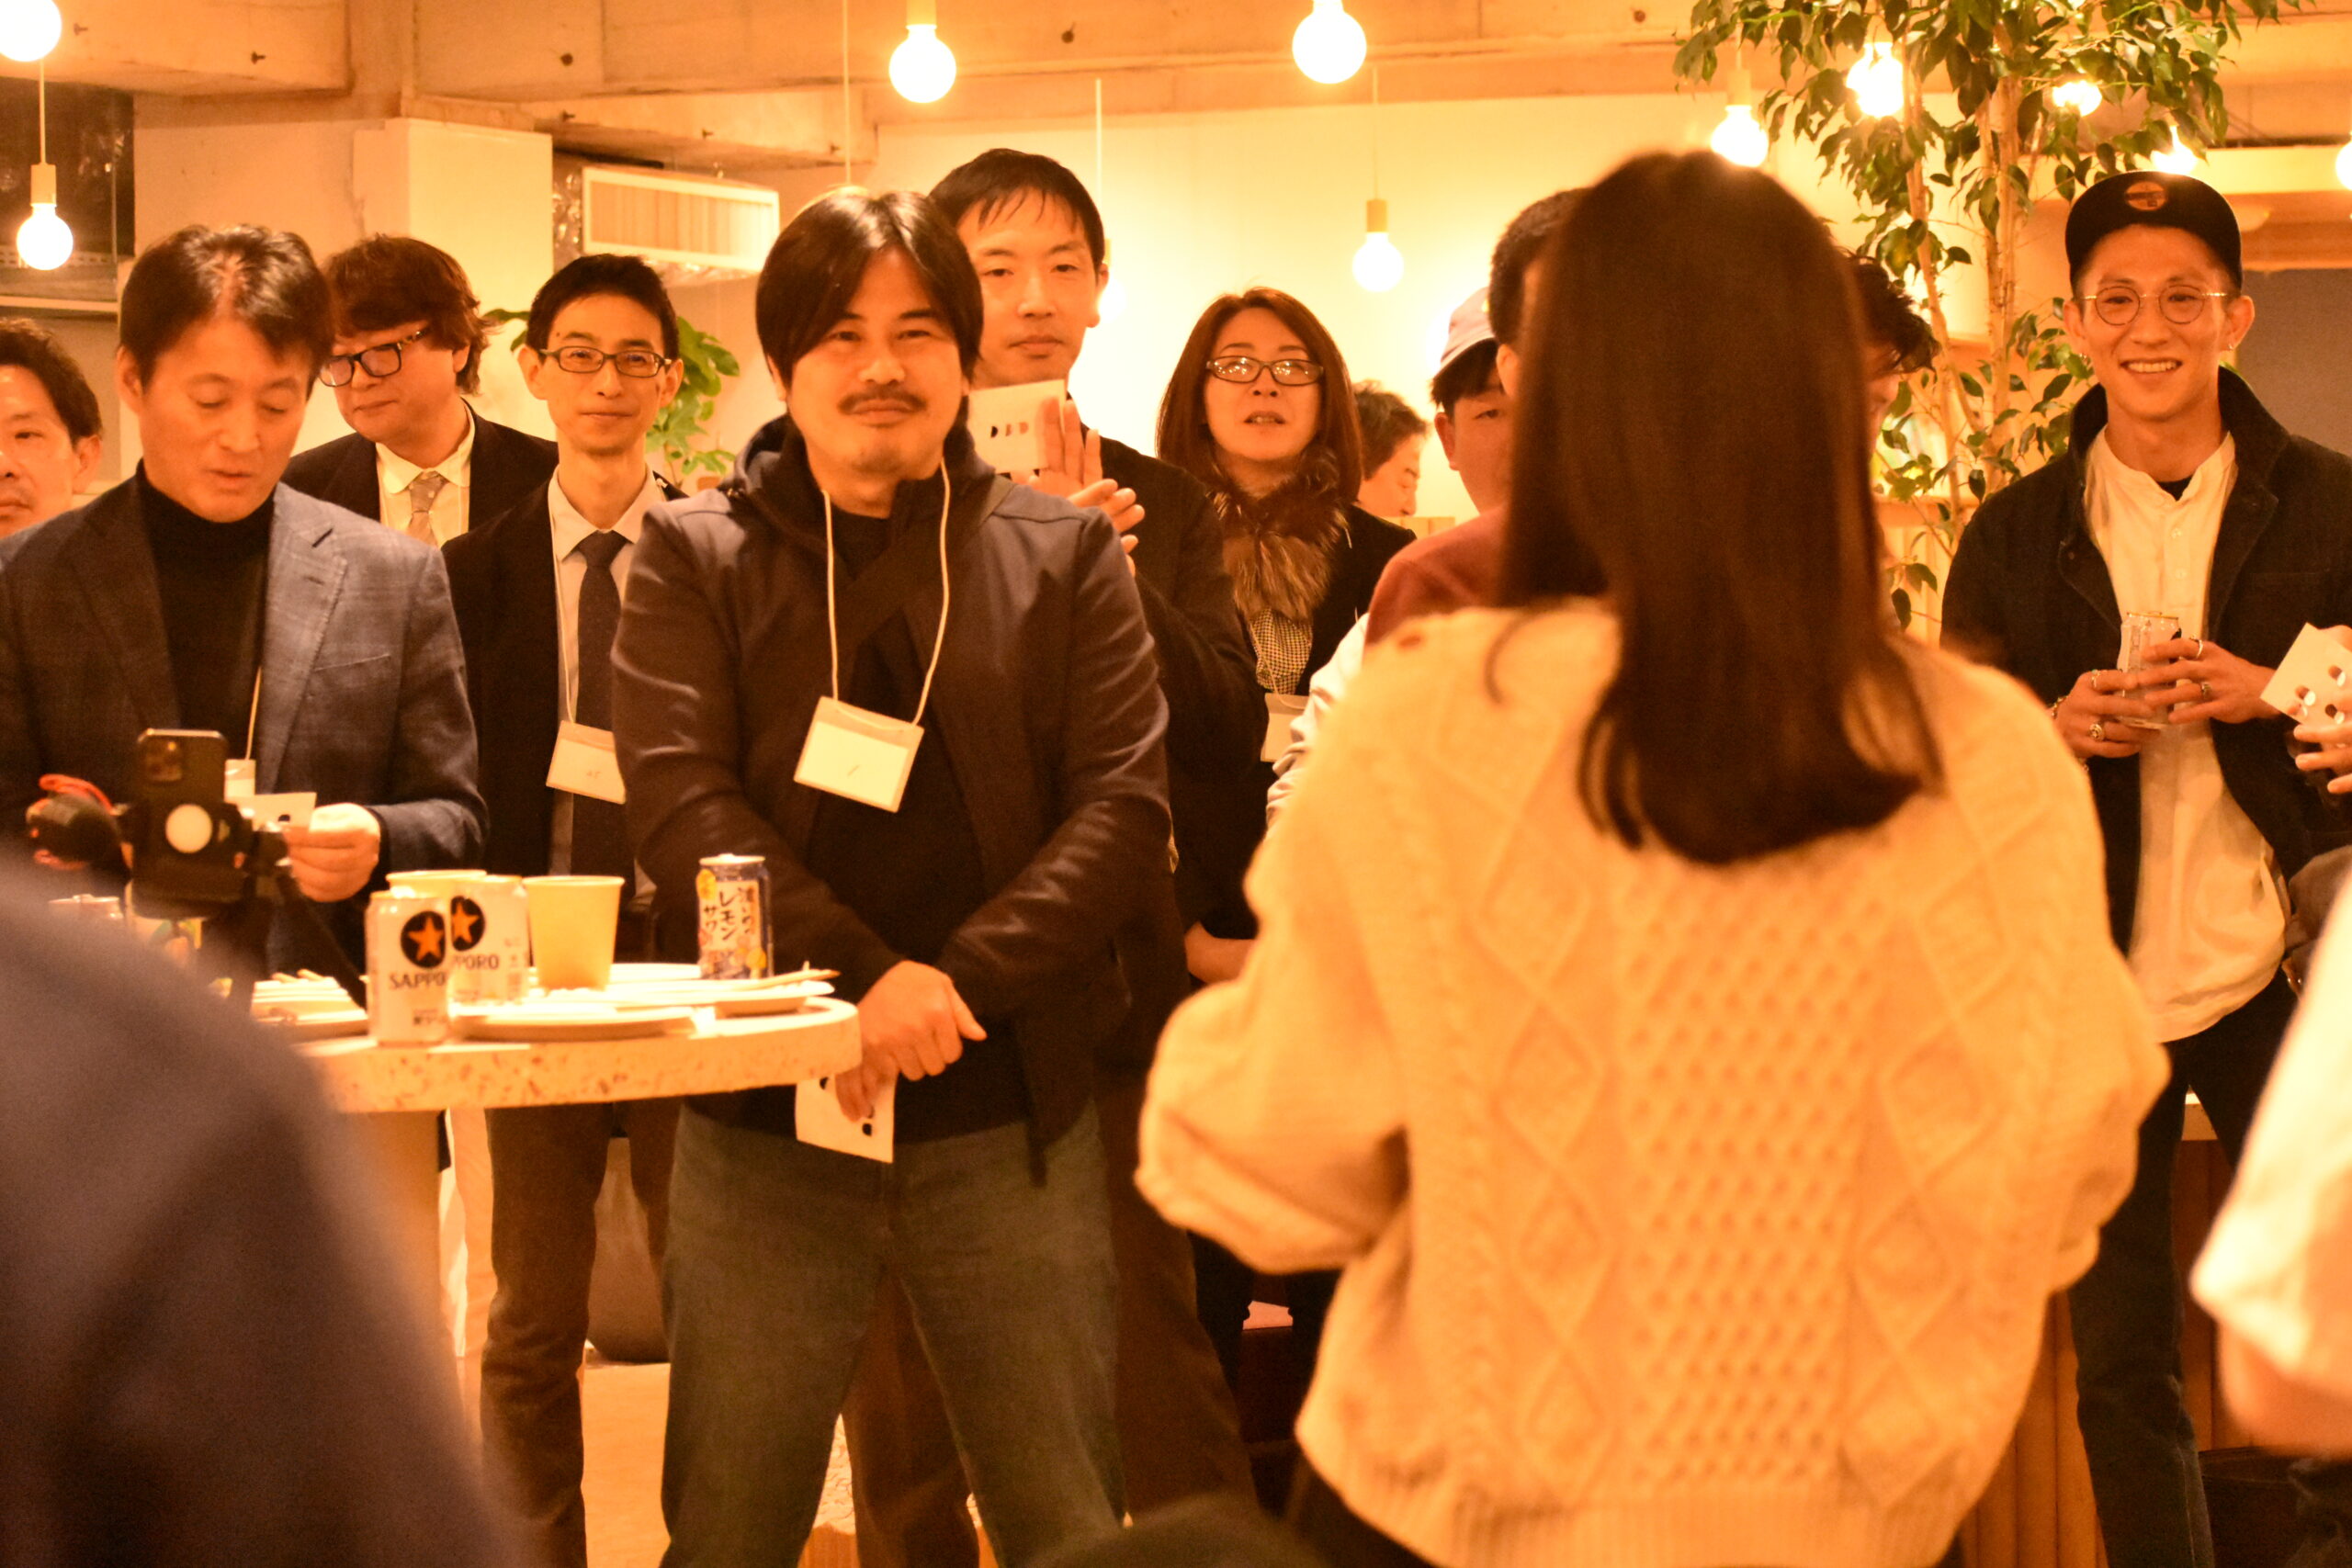 EVENT REPORT -チャレンジャーズの集い「チャレンジャーズアッセンブル Vol.1」を東京都港区で開催しました